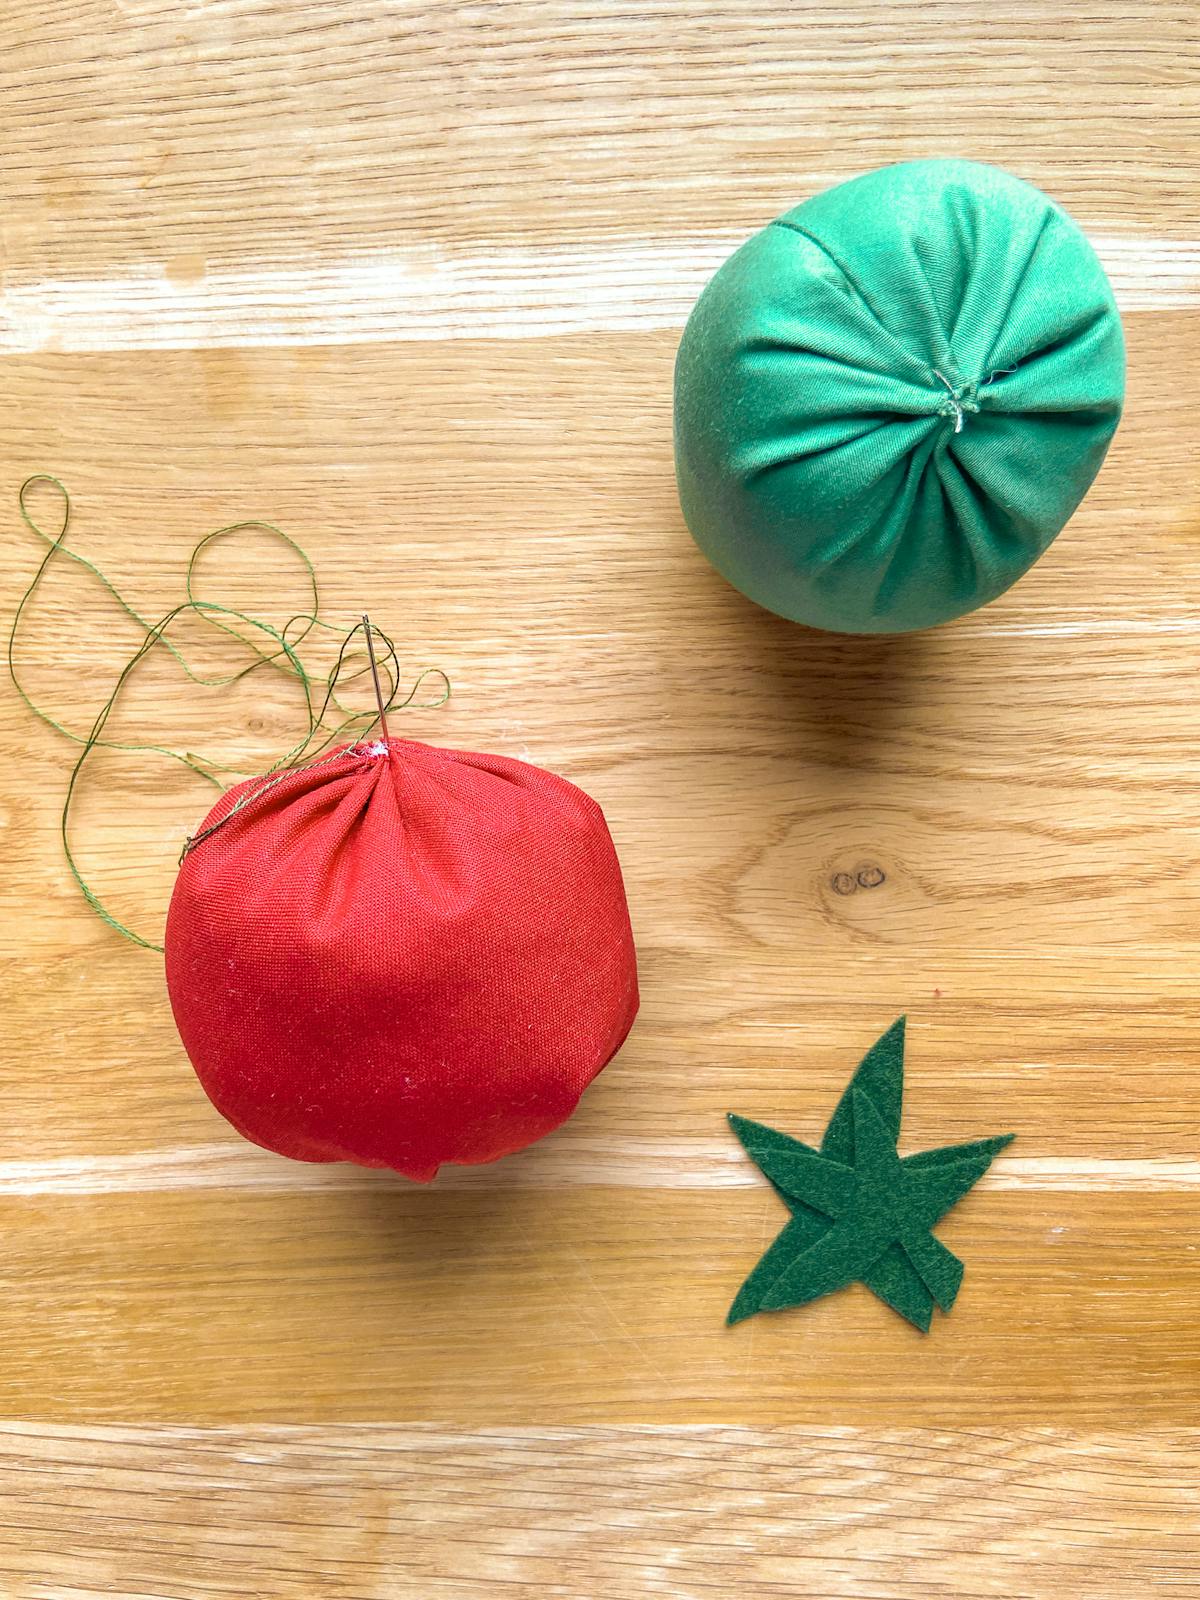  Finir des coussins pique aiguilles tomate en rouge et vert. Ajouter des segments.